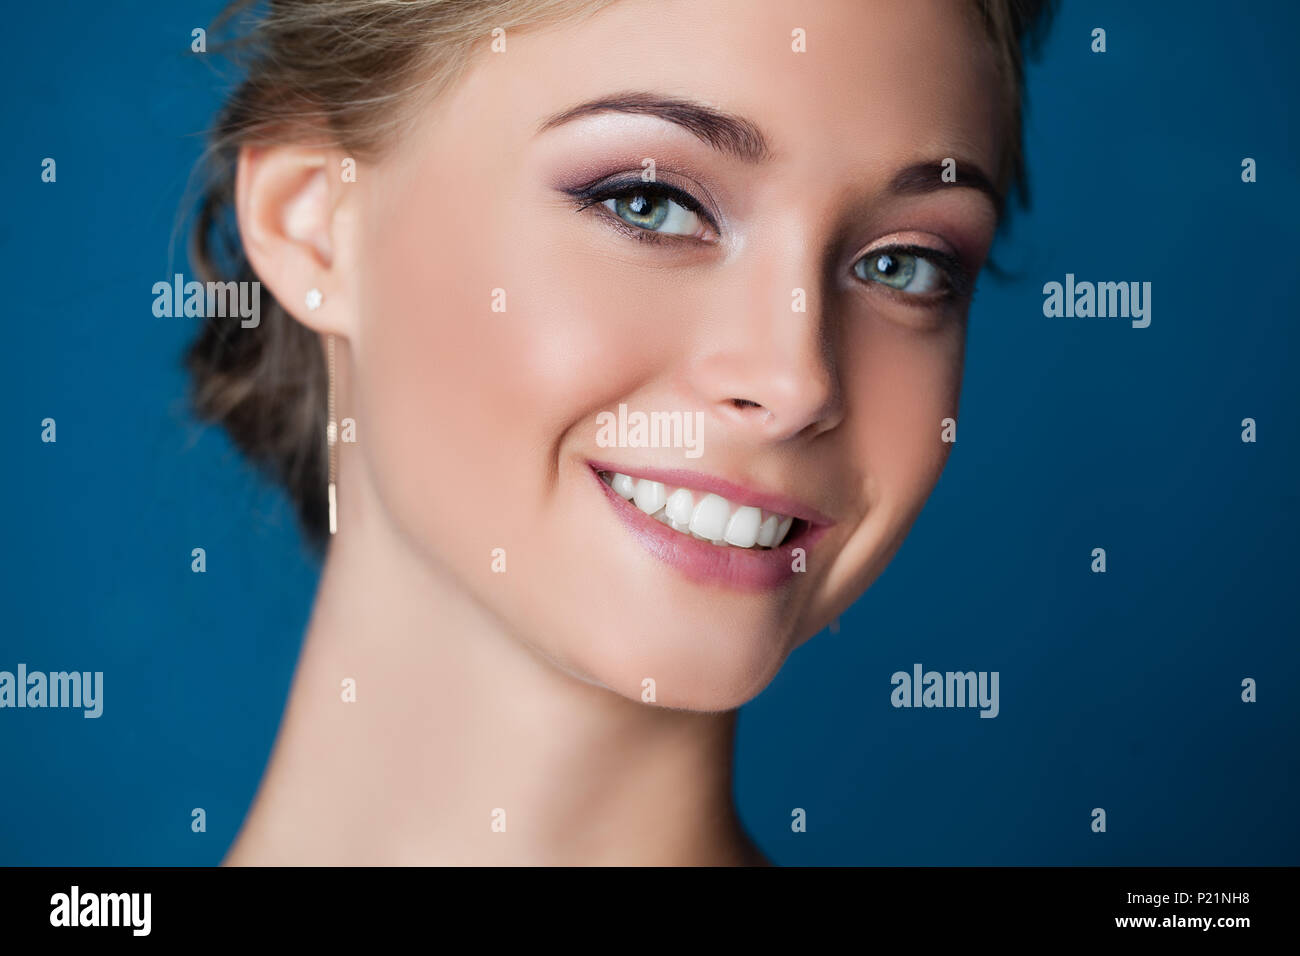 Young smiling woman face sur fond bleu, closeup portrait. Sourire mignon Banque D'Images